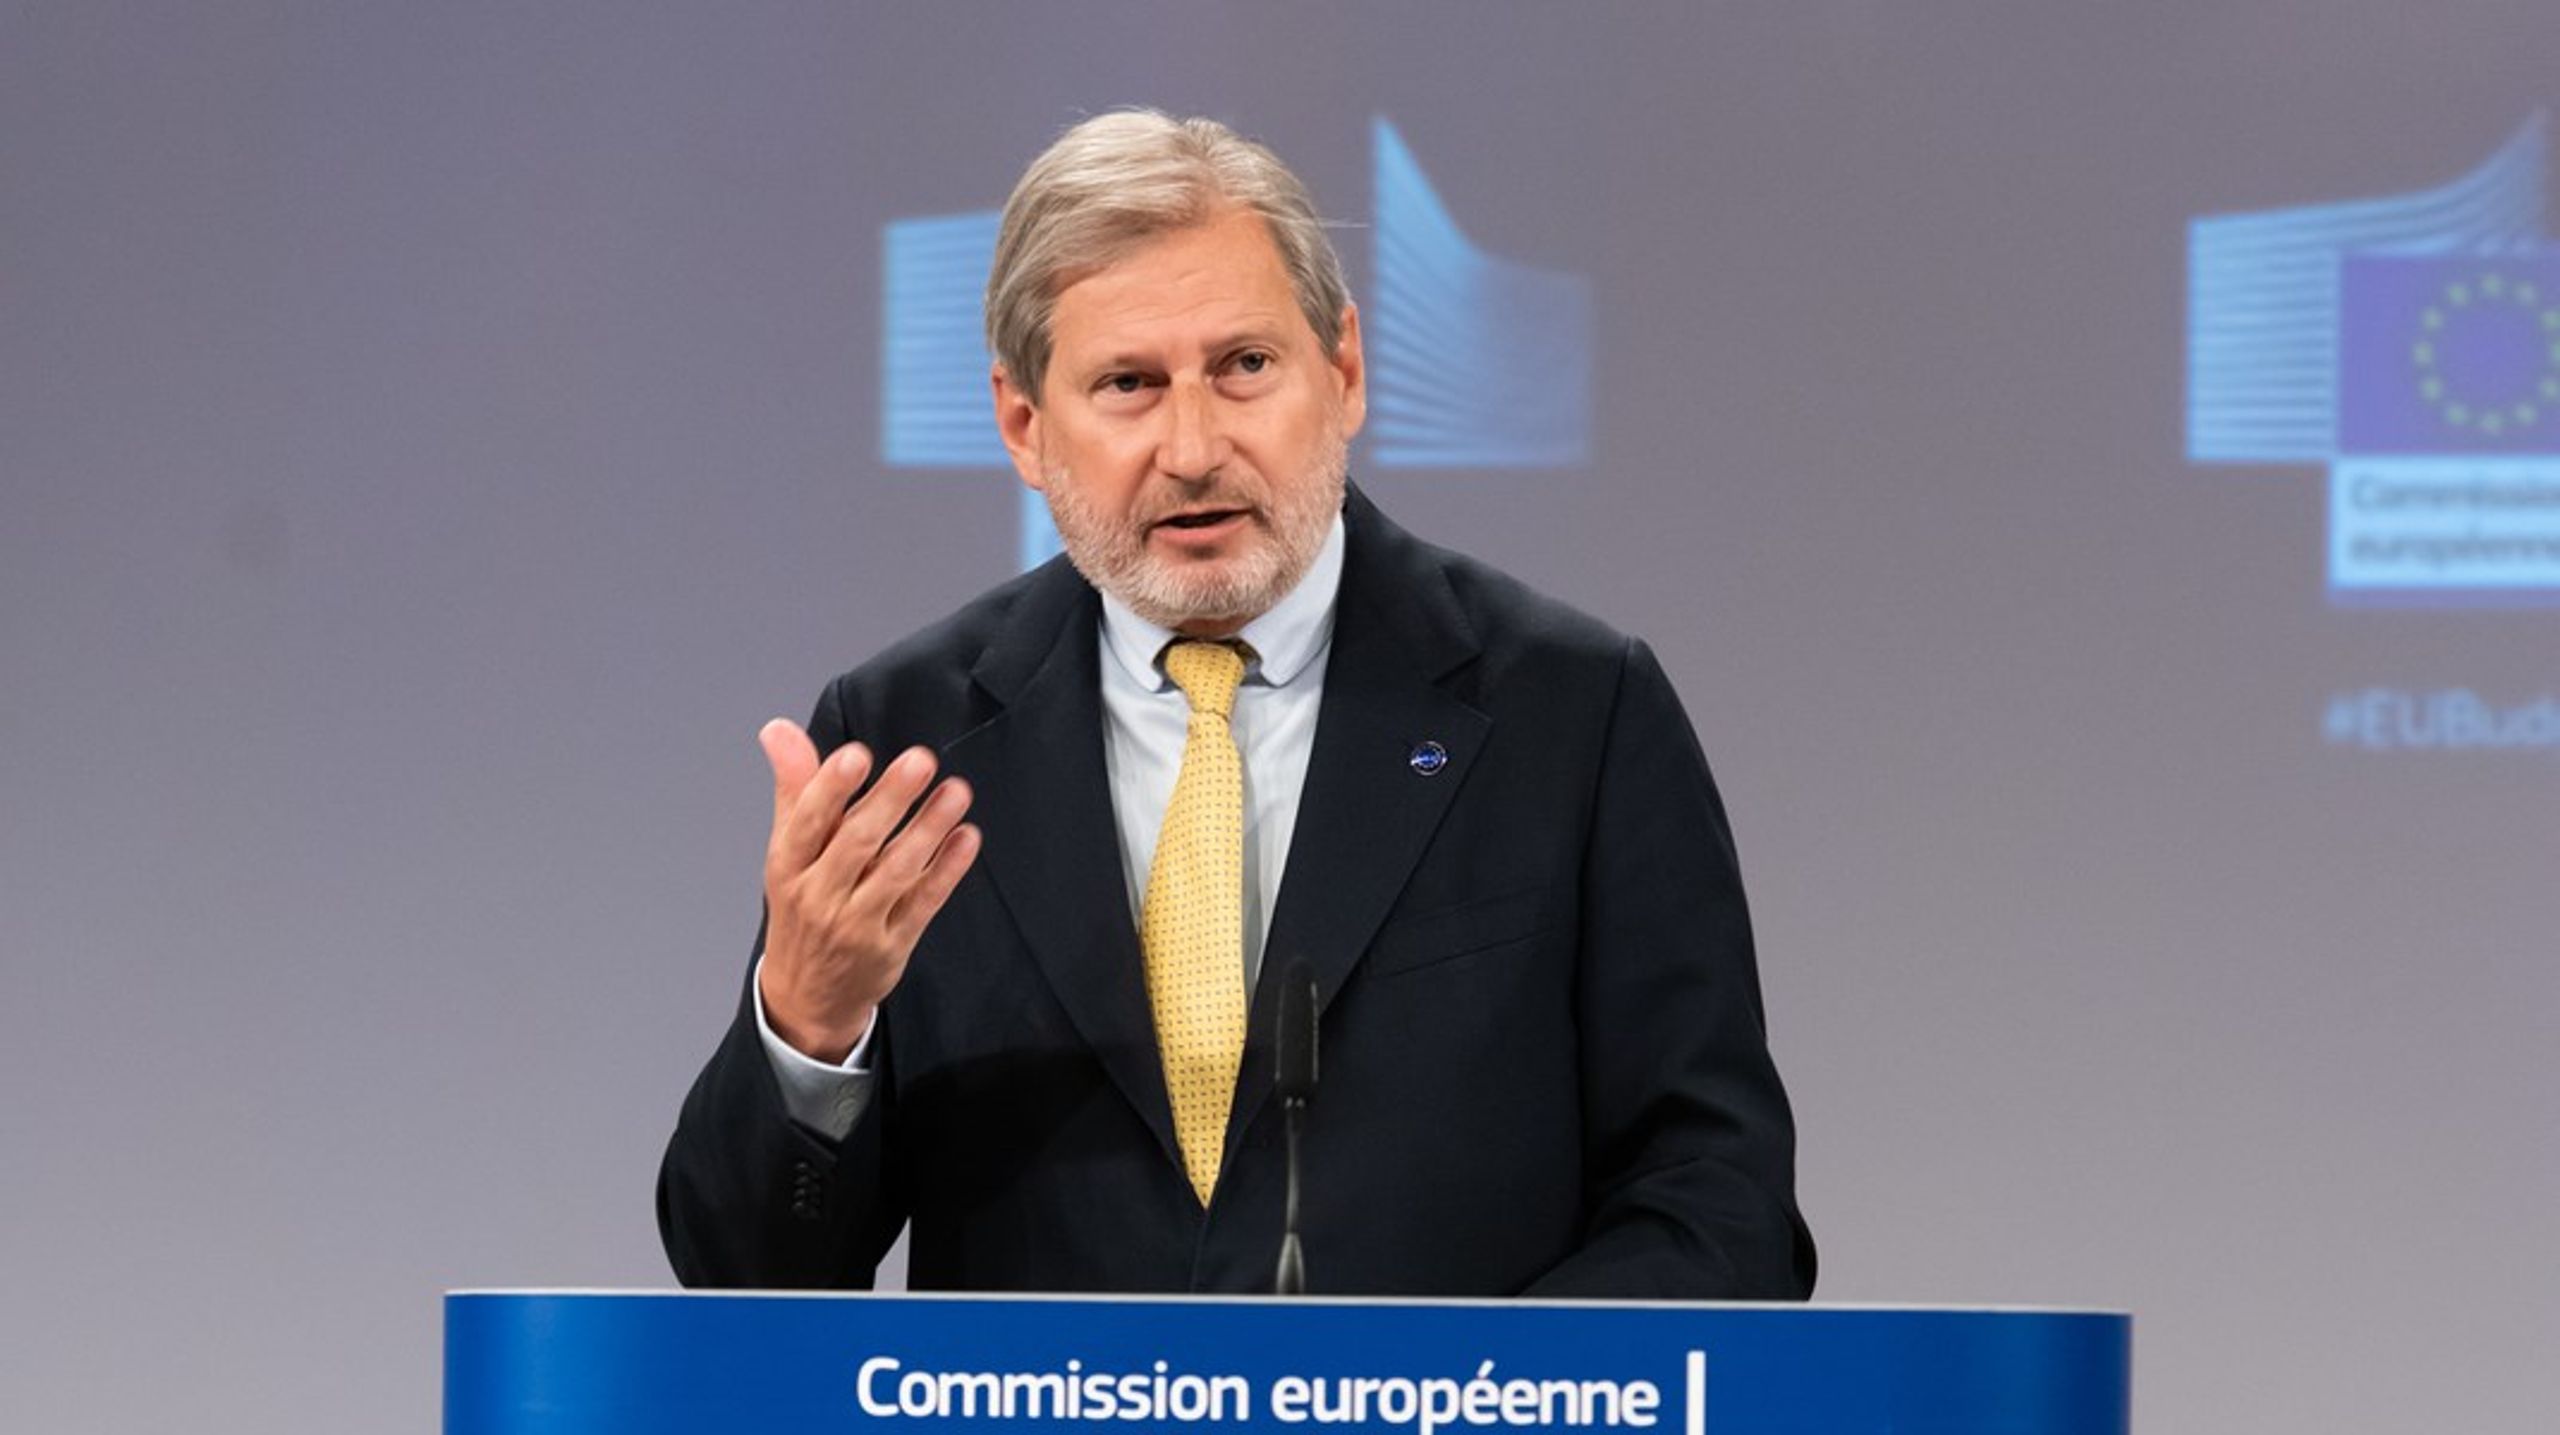 EU:s budgetkommissionär Johannes Hahn presenterade på tisdagen en översyn av unionens flerårsbudget – och bad EU-länderna att skjuta till med ytterligare 780 miljarder kronor.&nbsp;